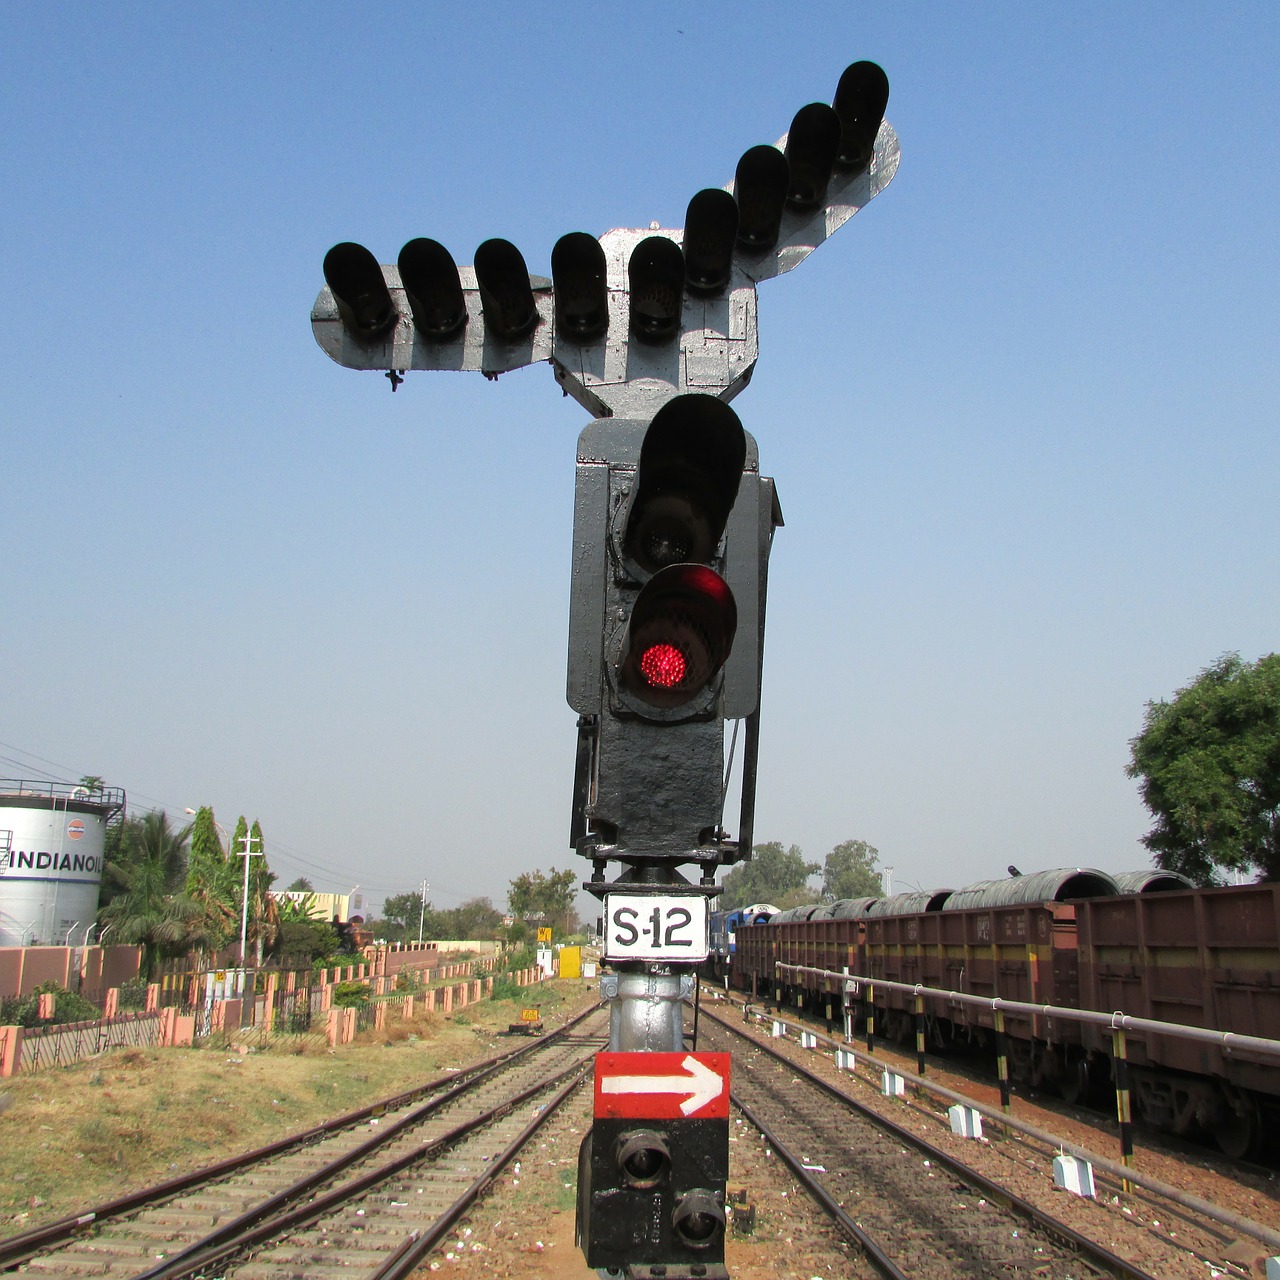 Geležinkelio Signalas, Buveinė, Indija, Traukinys, Trasa, Gabenimas, Transportas, Geležinkelis, Tranzitas, Visuomenė